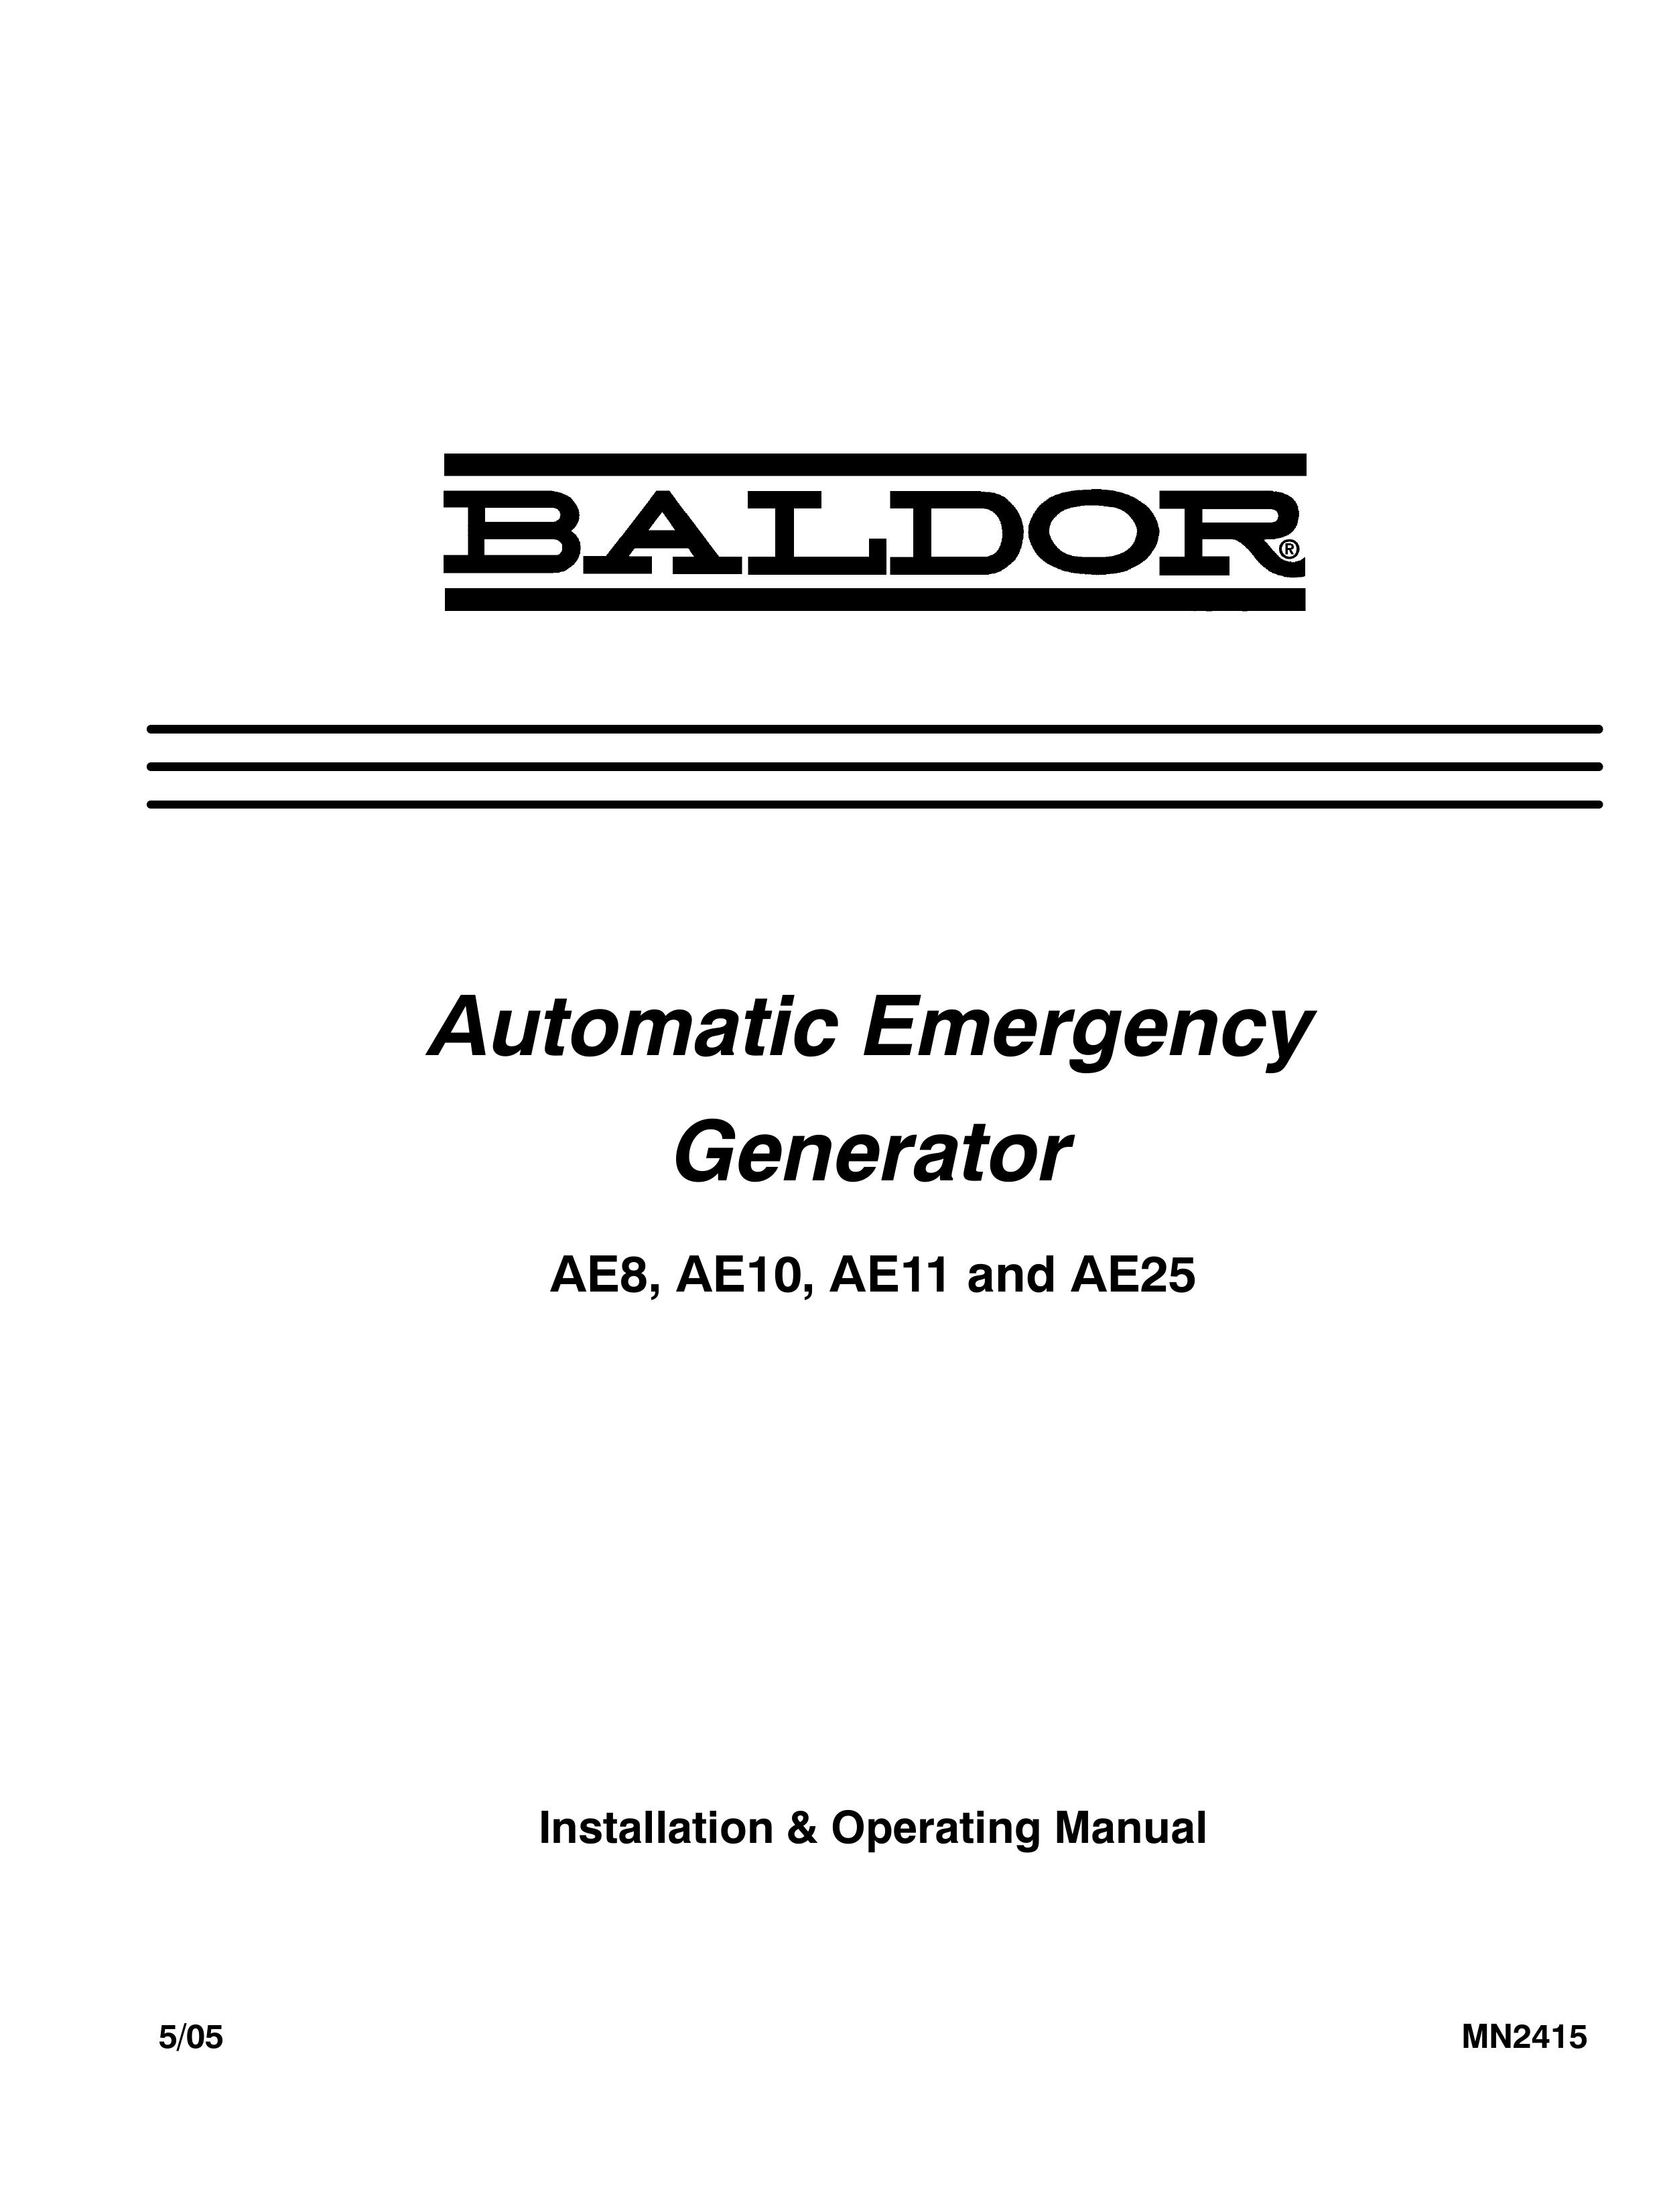 Baldor AE25 Portable Generator User Manual